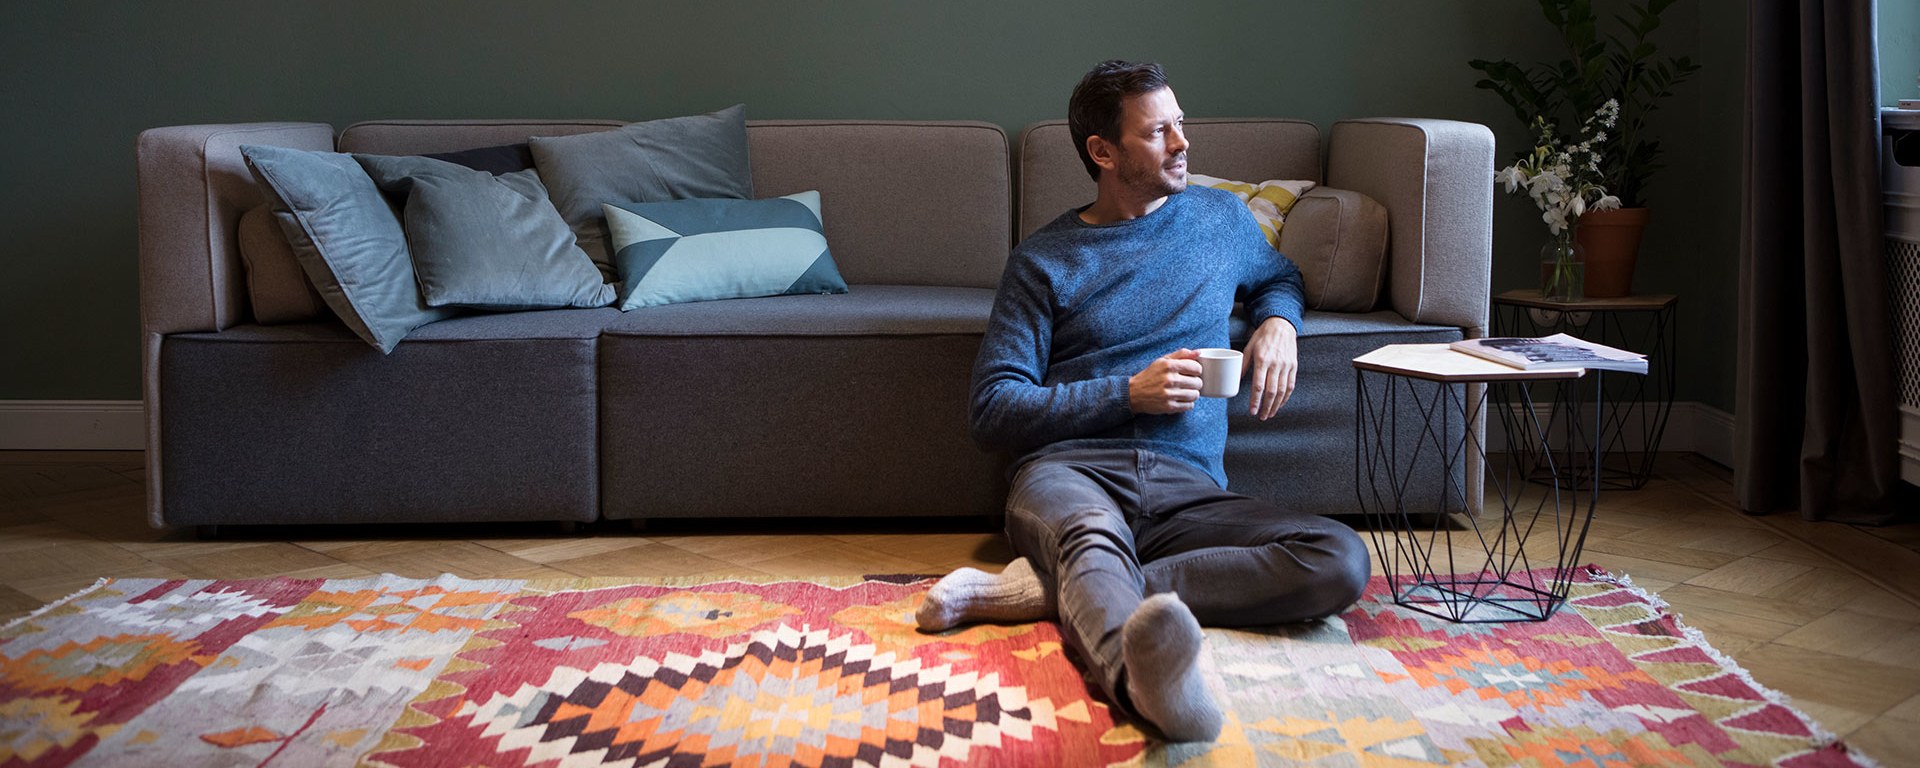 Un uomo rilassato è seduto per terra accanto a un divano, appoggiato indietro con una tazza in mano, guardando di lato. Un soggiorno accogliente con cuscini sul divano.